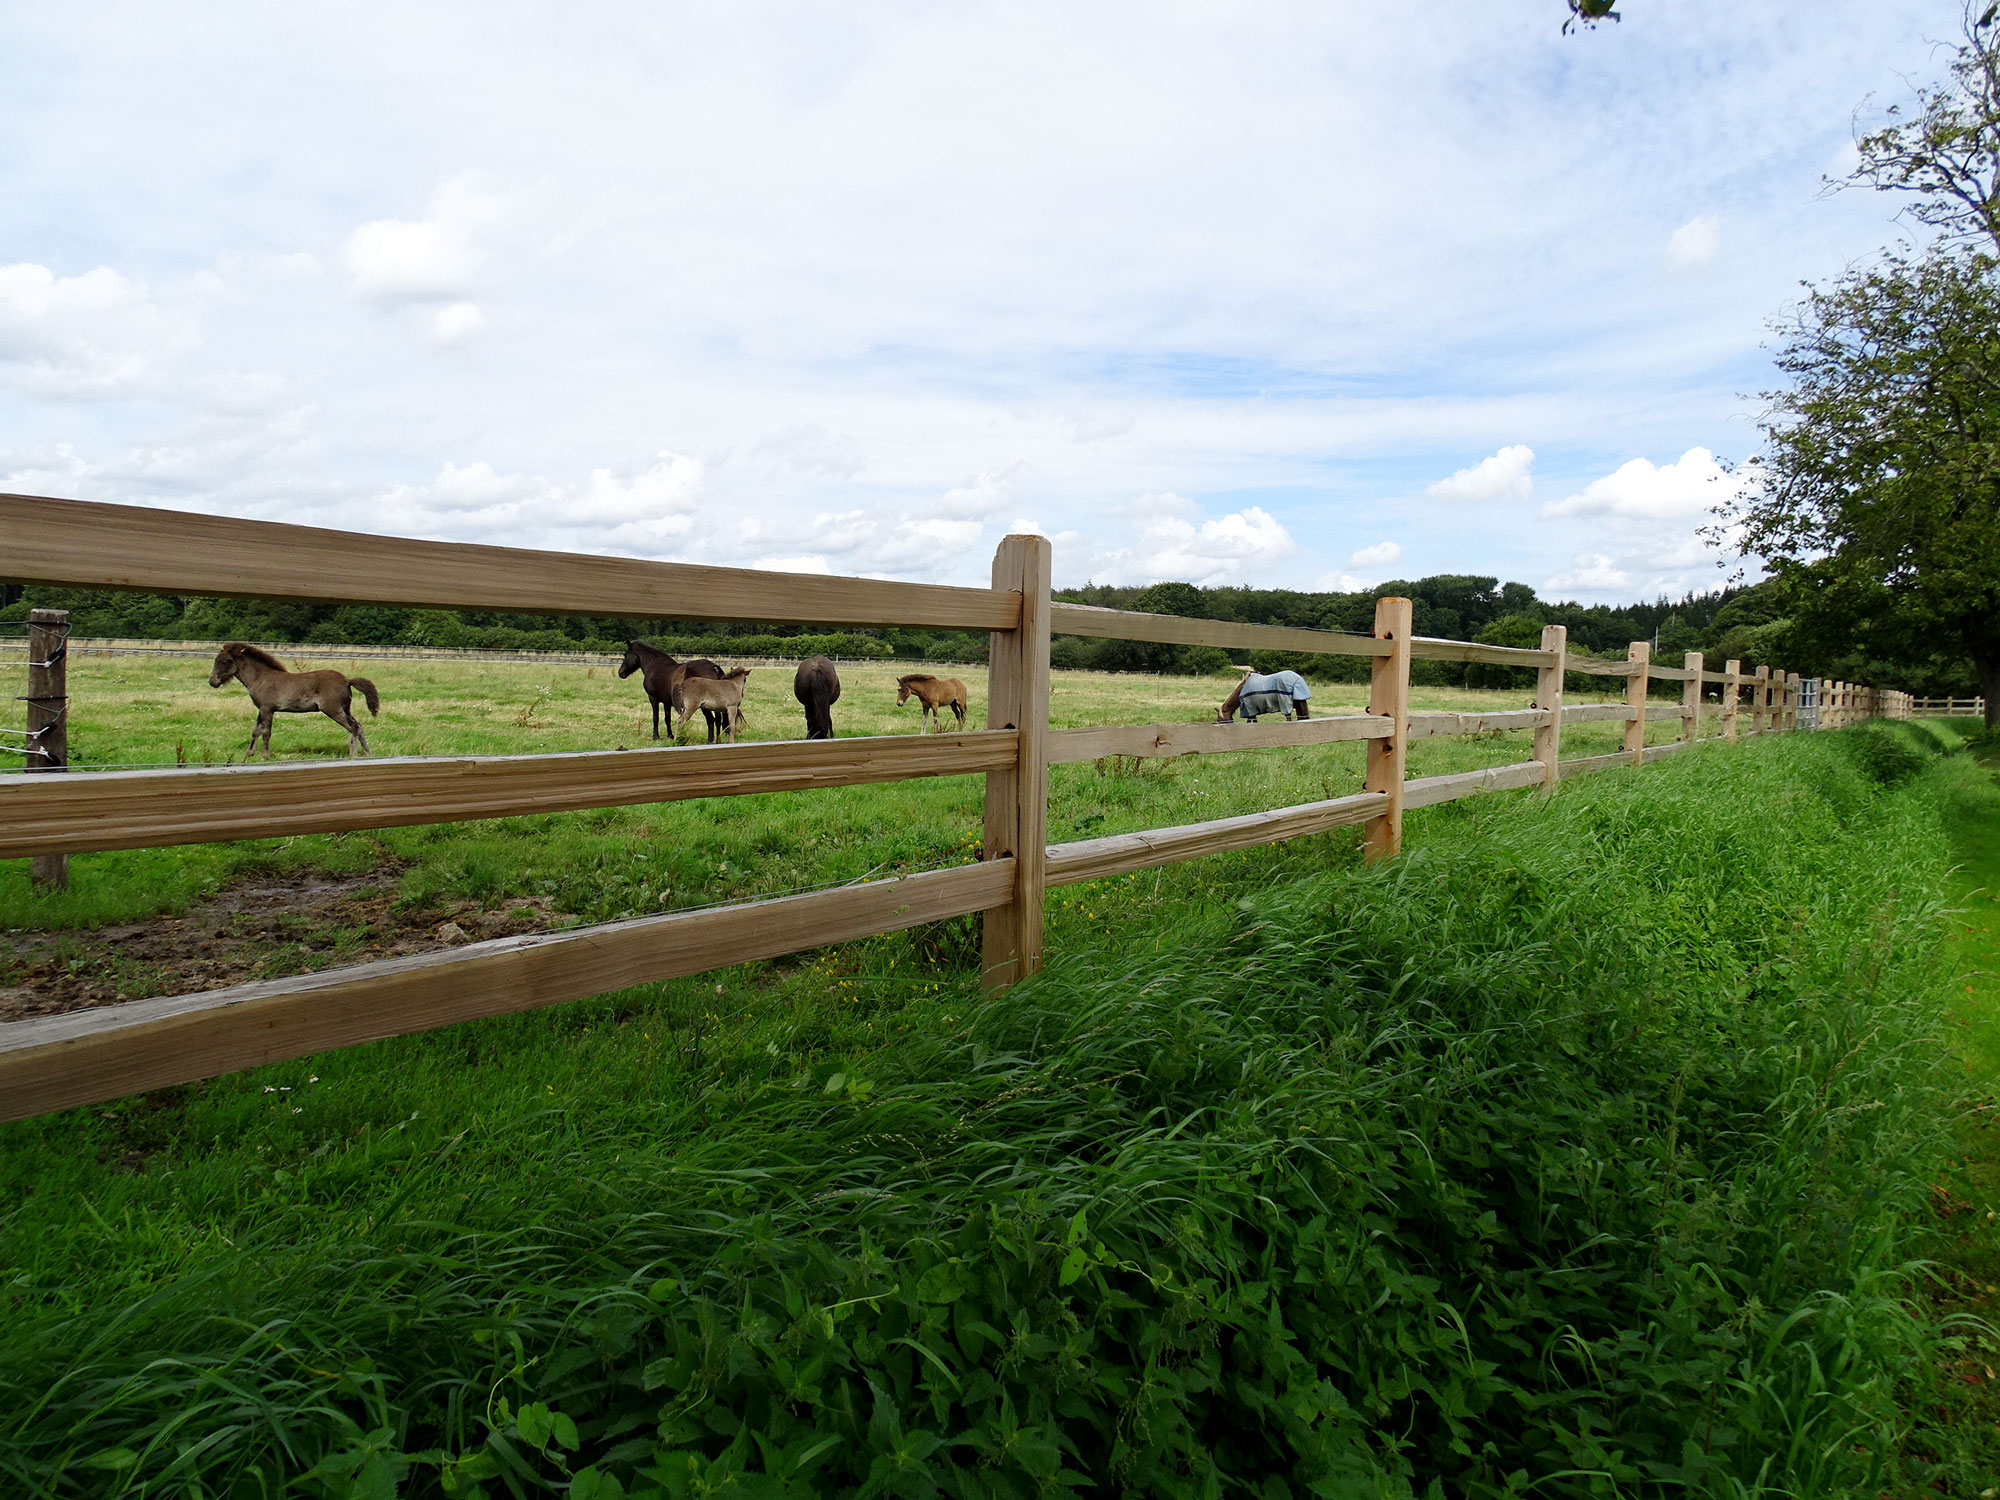 Zwischen den Latten eines rustikalen Pferdezauns sind mehrere Pferde und Fohlen zu sehen, die auf einer Koppel grasen.